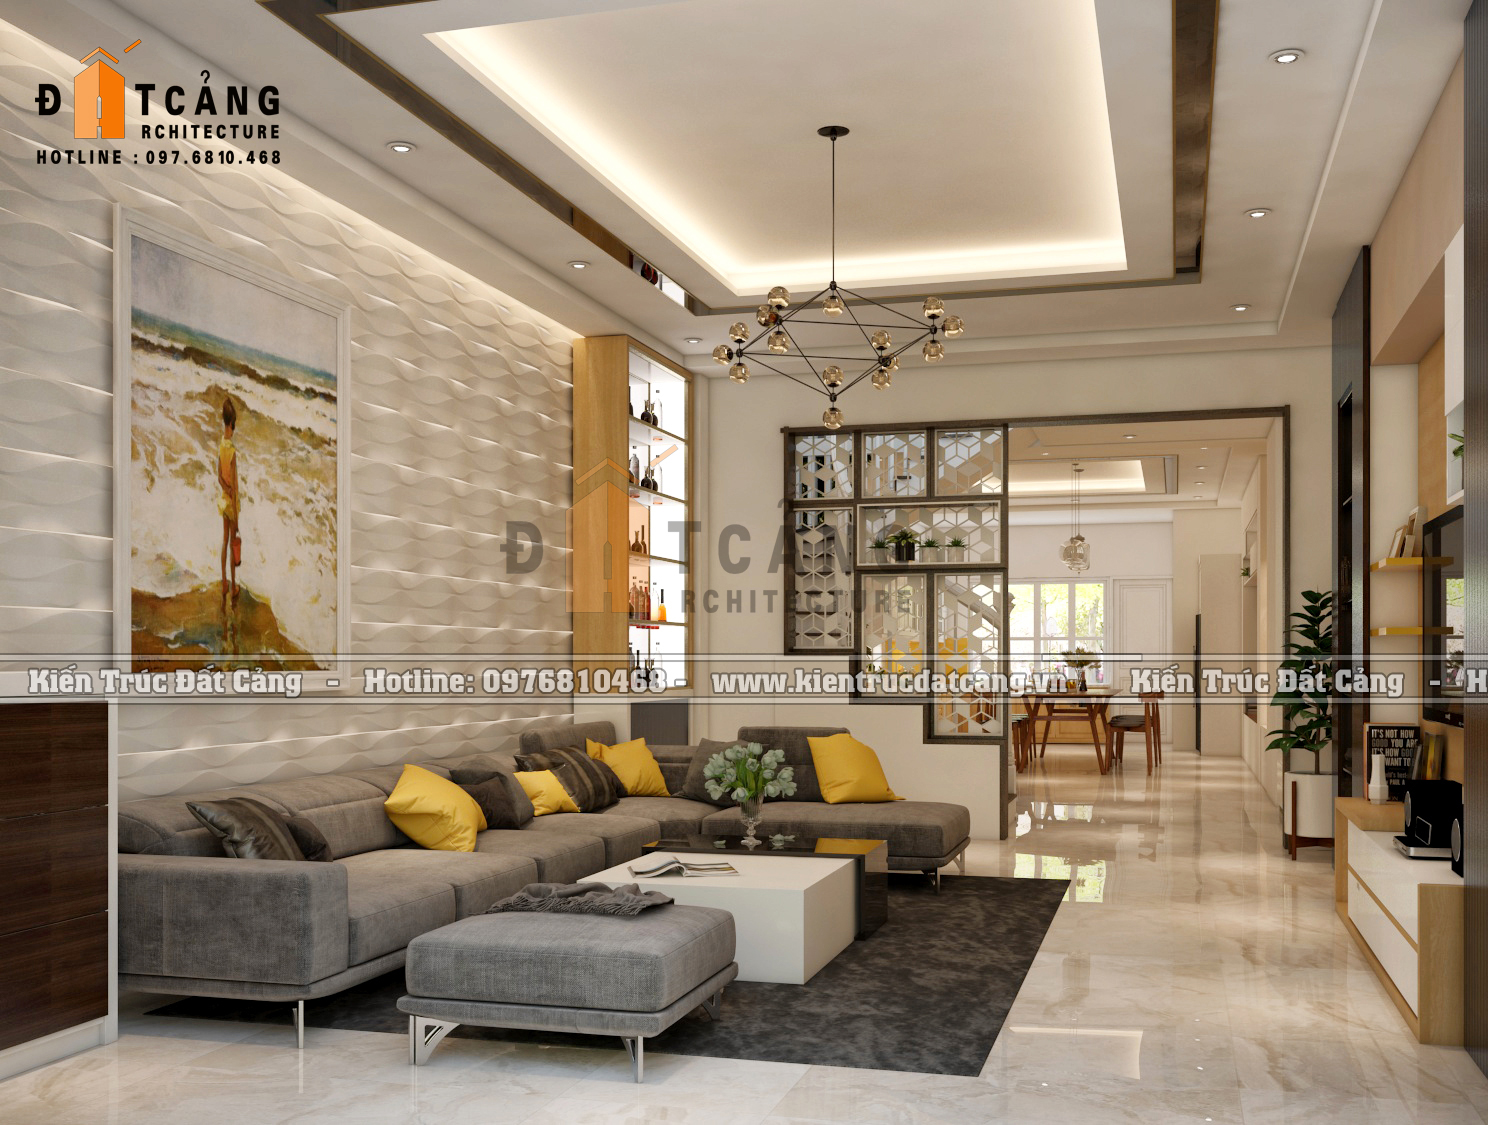 Thiết kế nội thất căn hộ liền kề phong cách hiện đại đẹp tại Hà Nội